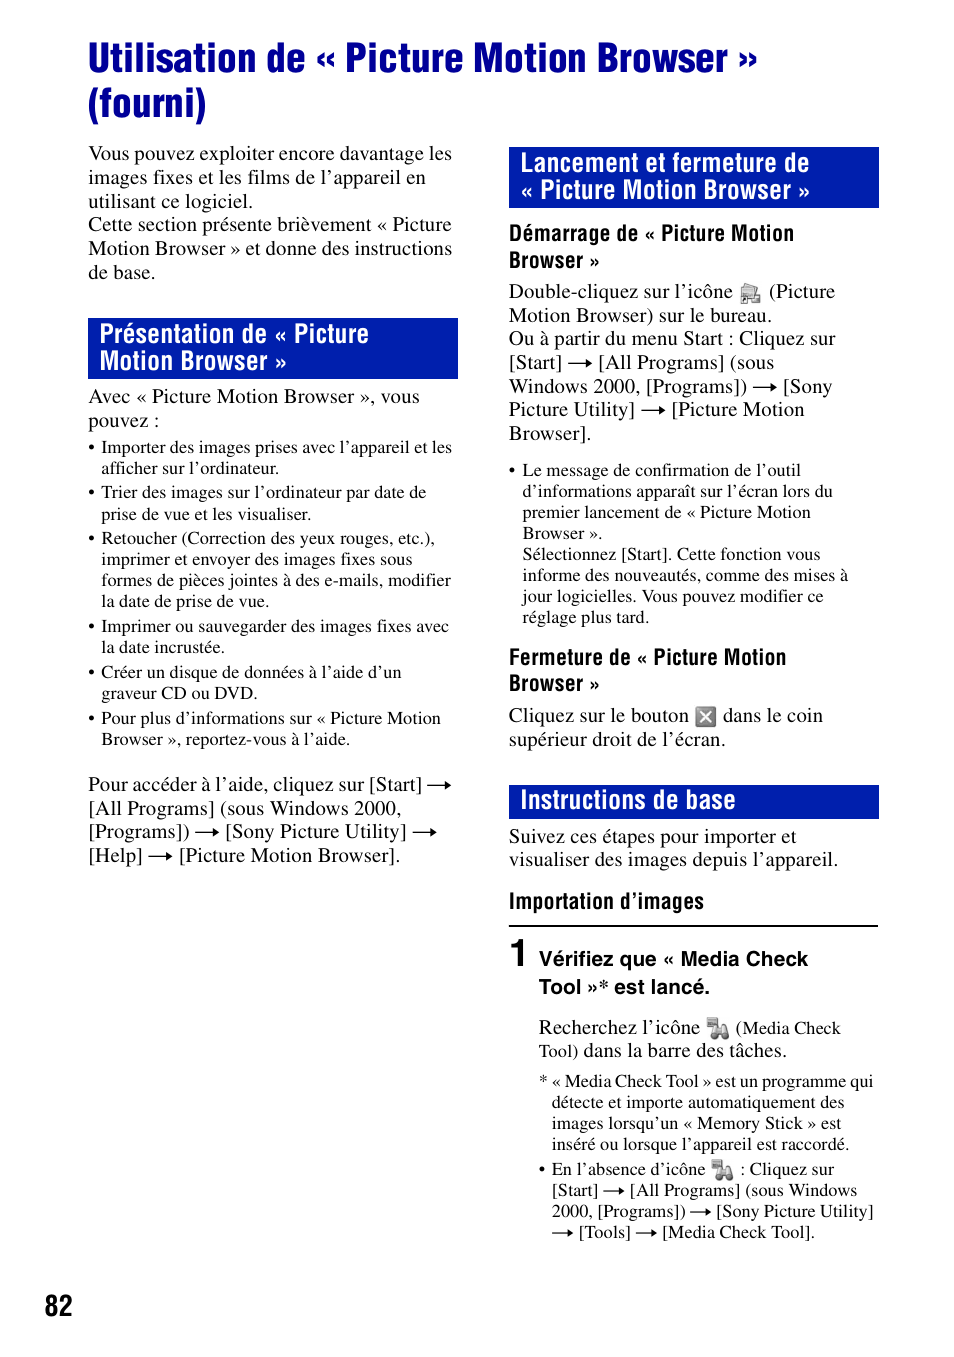 Utilisation de « picture motion browser » (fourni), 82 et 88) | Sony DSC-T20 Manuel d'utilisation | Page 82 / 122